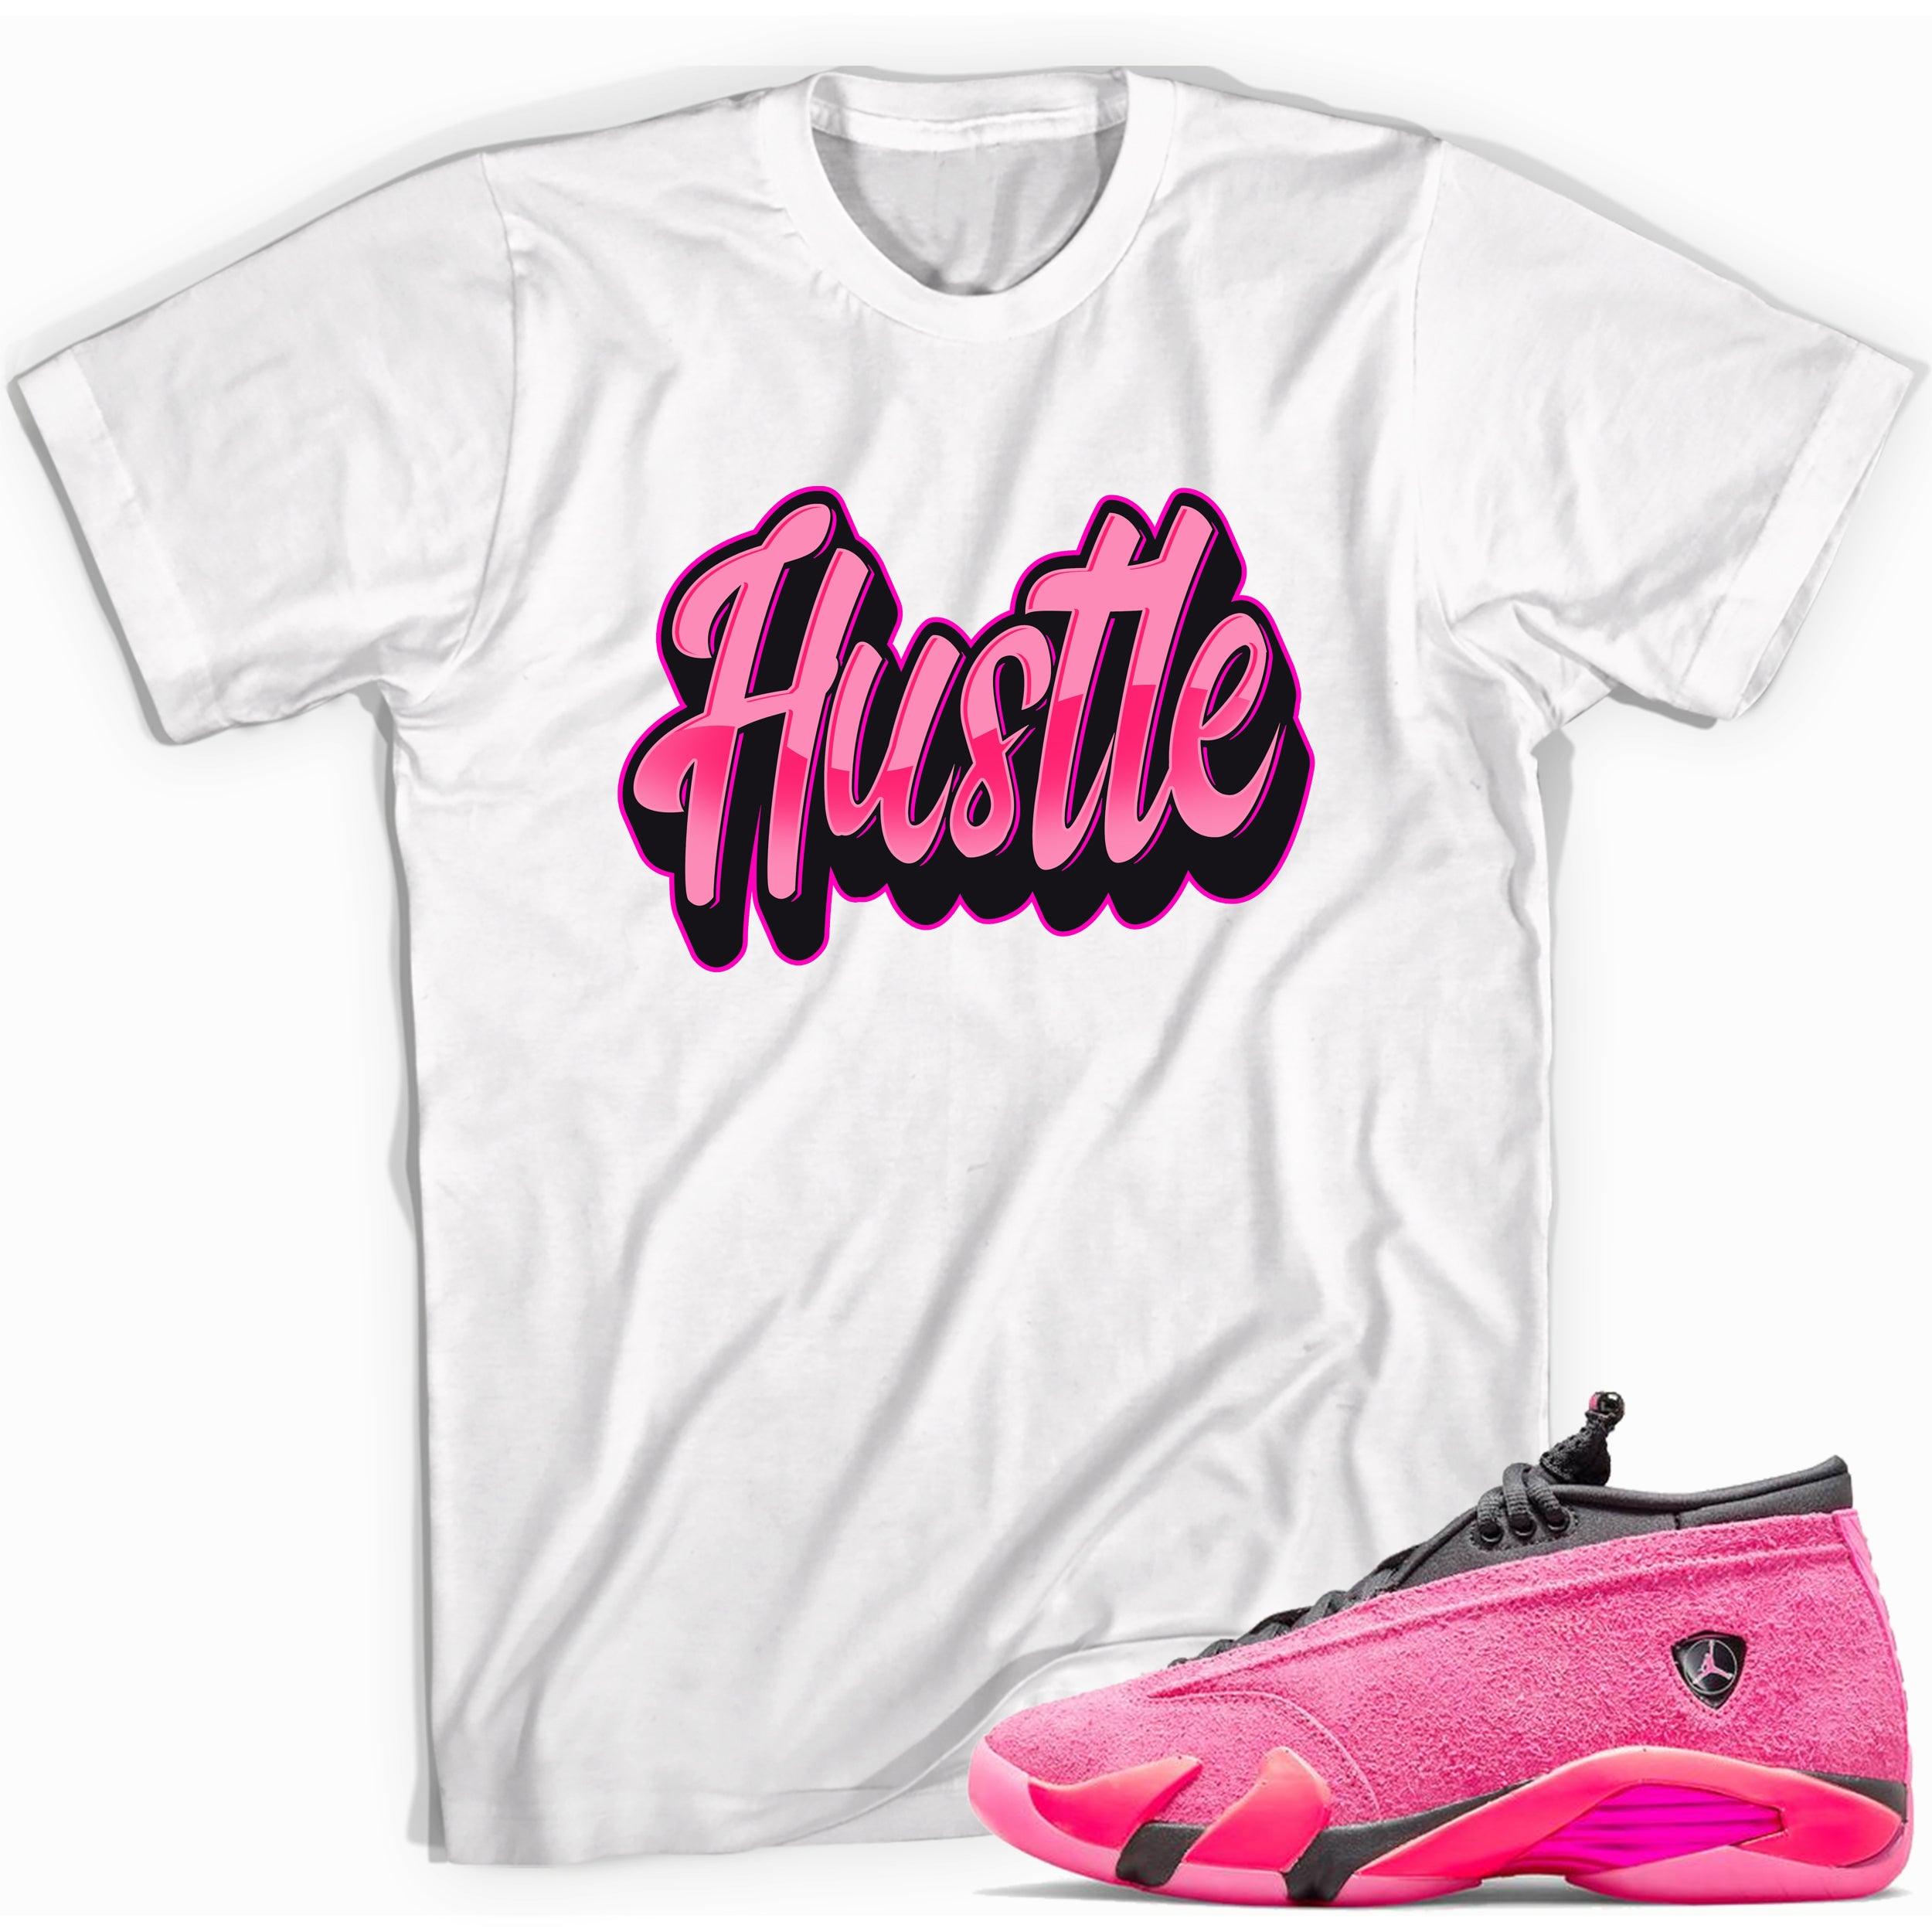 Hustle Shirt Jordan 14s Low Shocking Pink photo